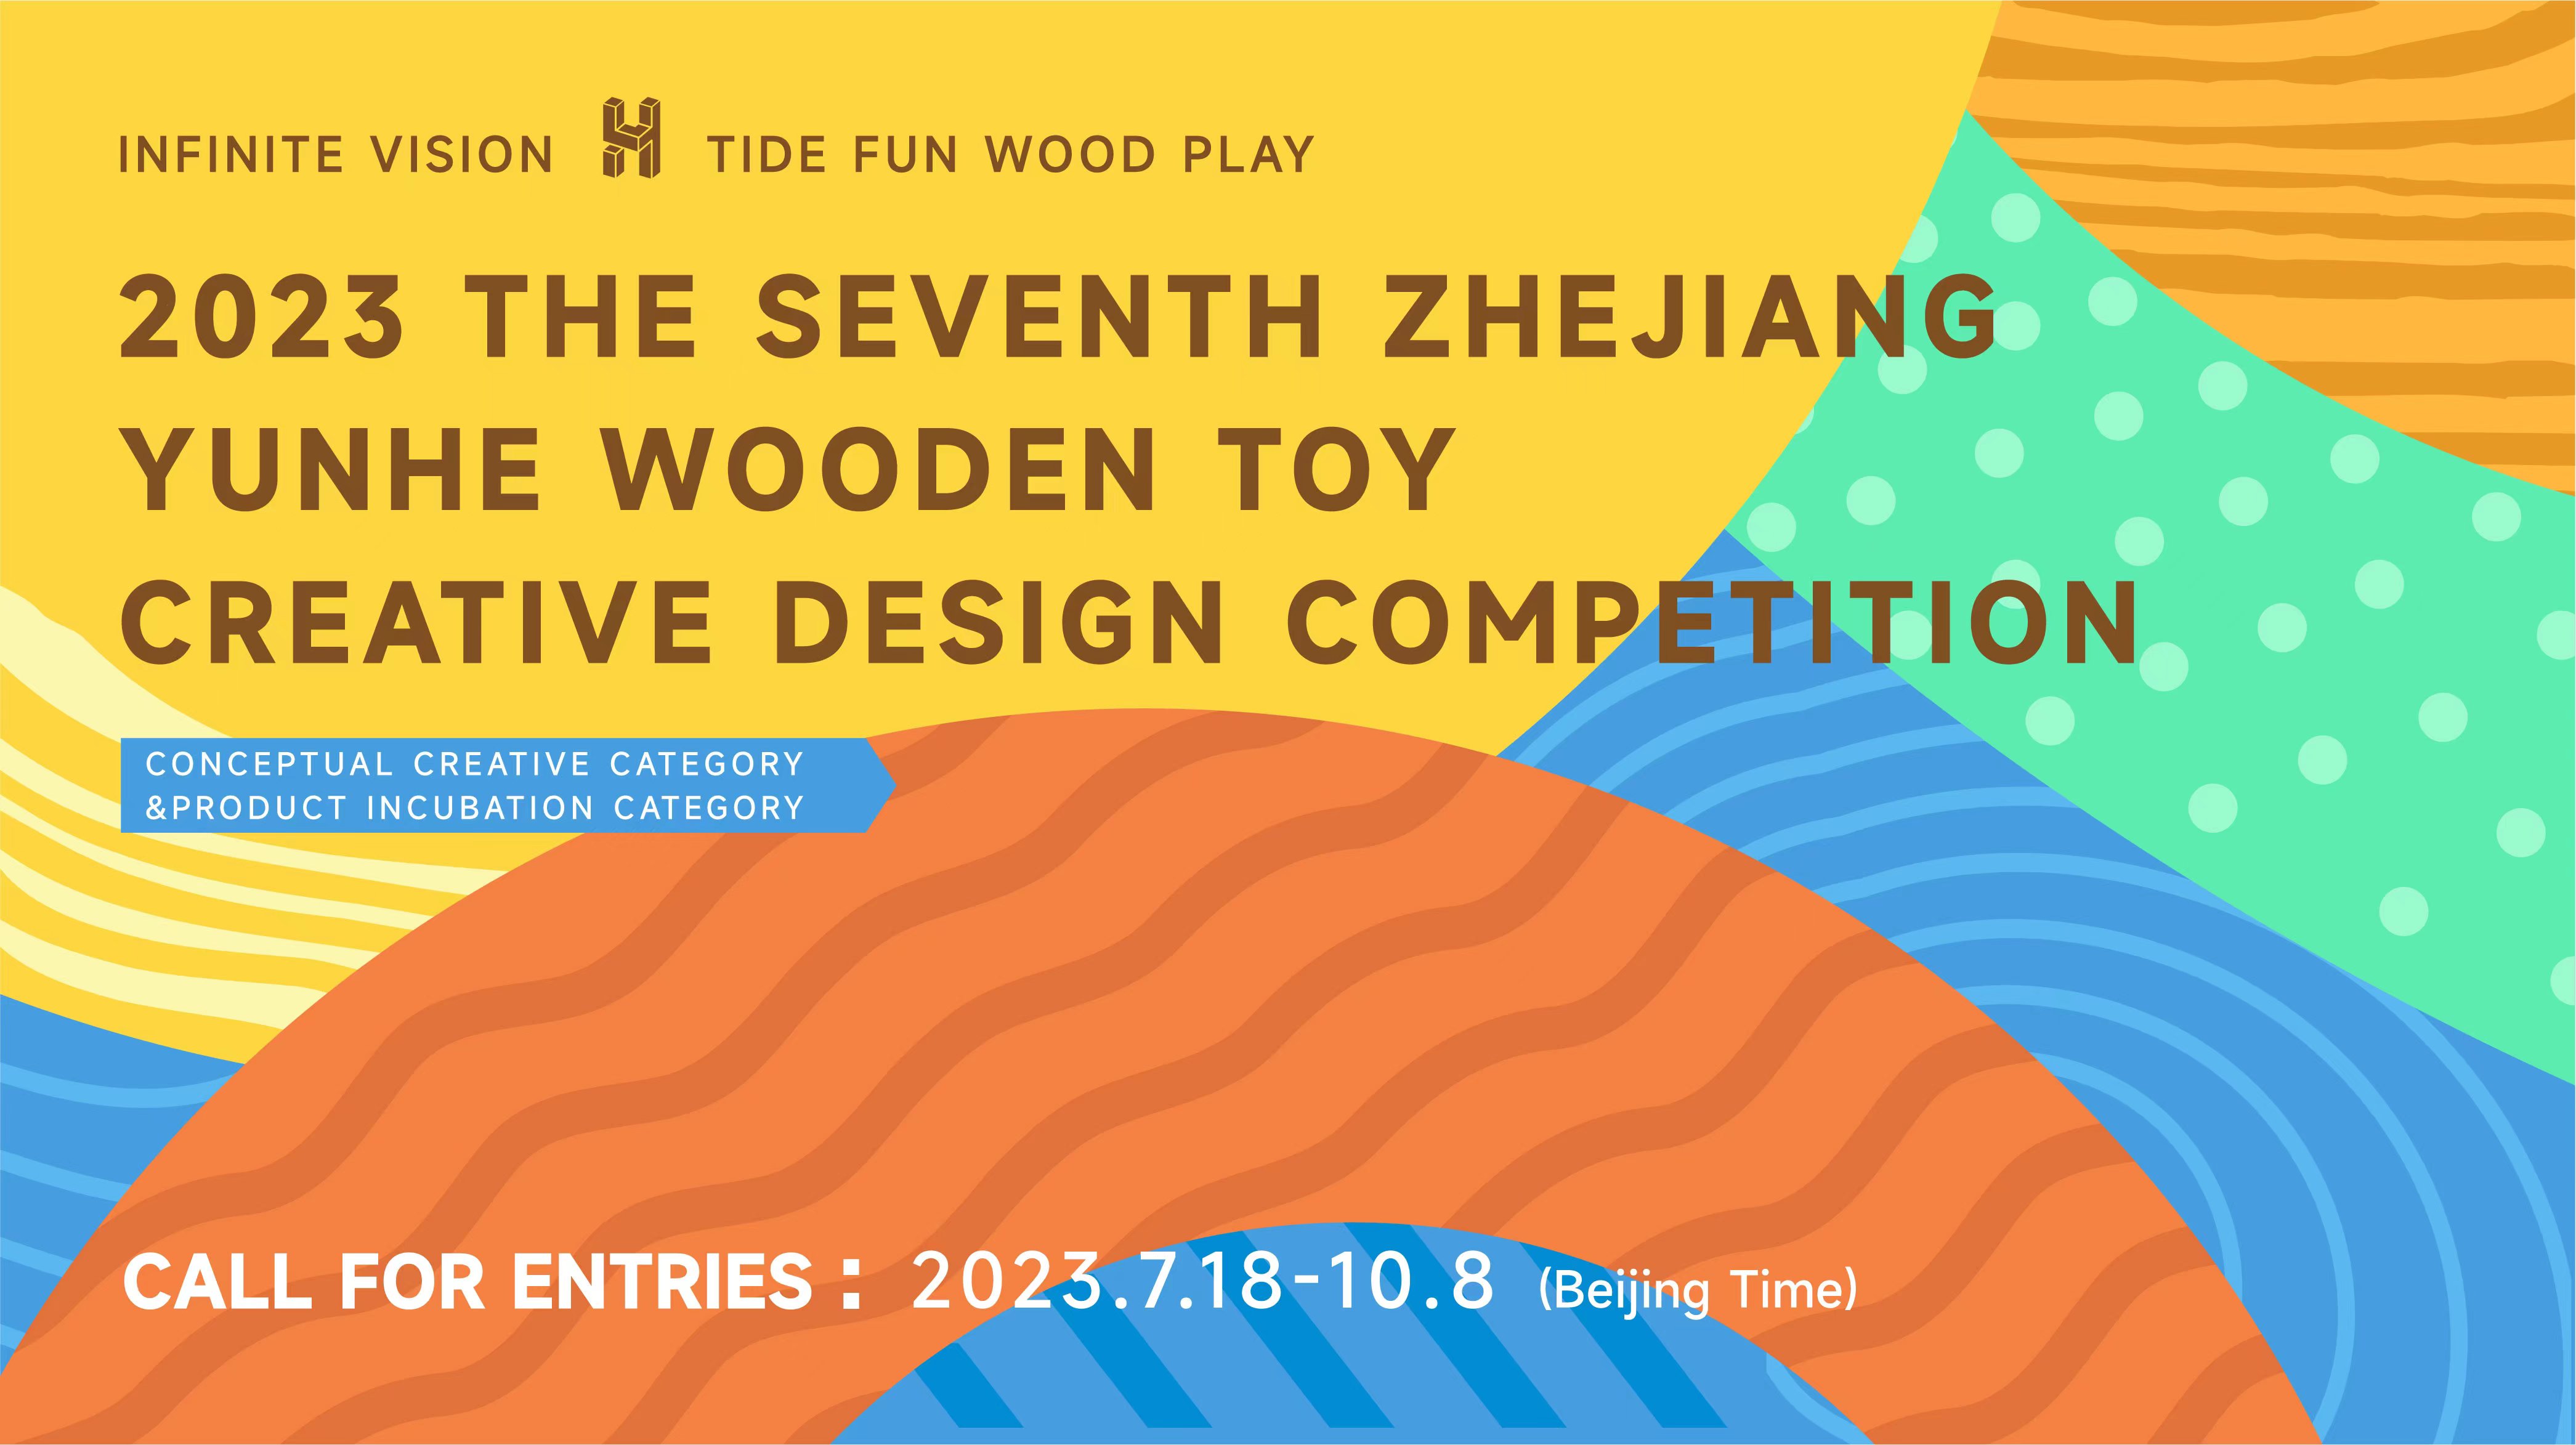 فراخوان مسابقه طراحی خلاقانه اسباب بازی چوبی 2023 Zhejiang Yunhe